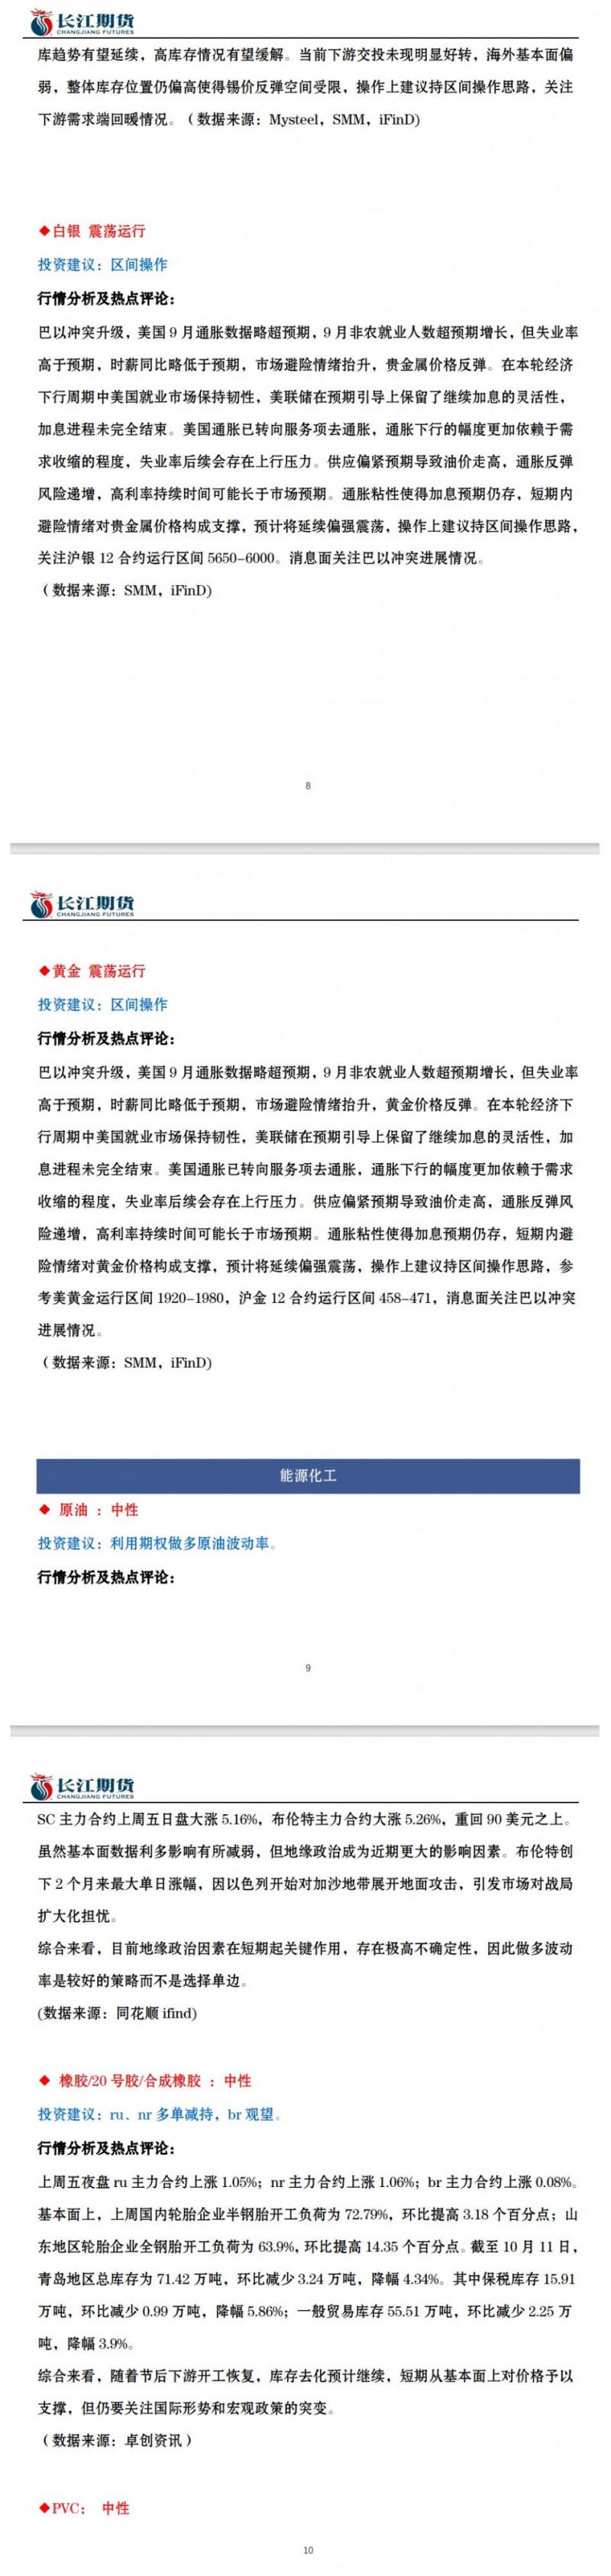 长江期货10月16日期货市场交易指引